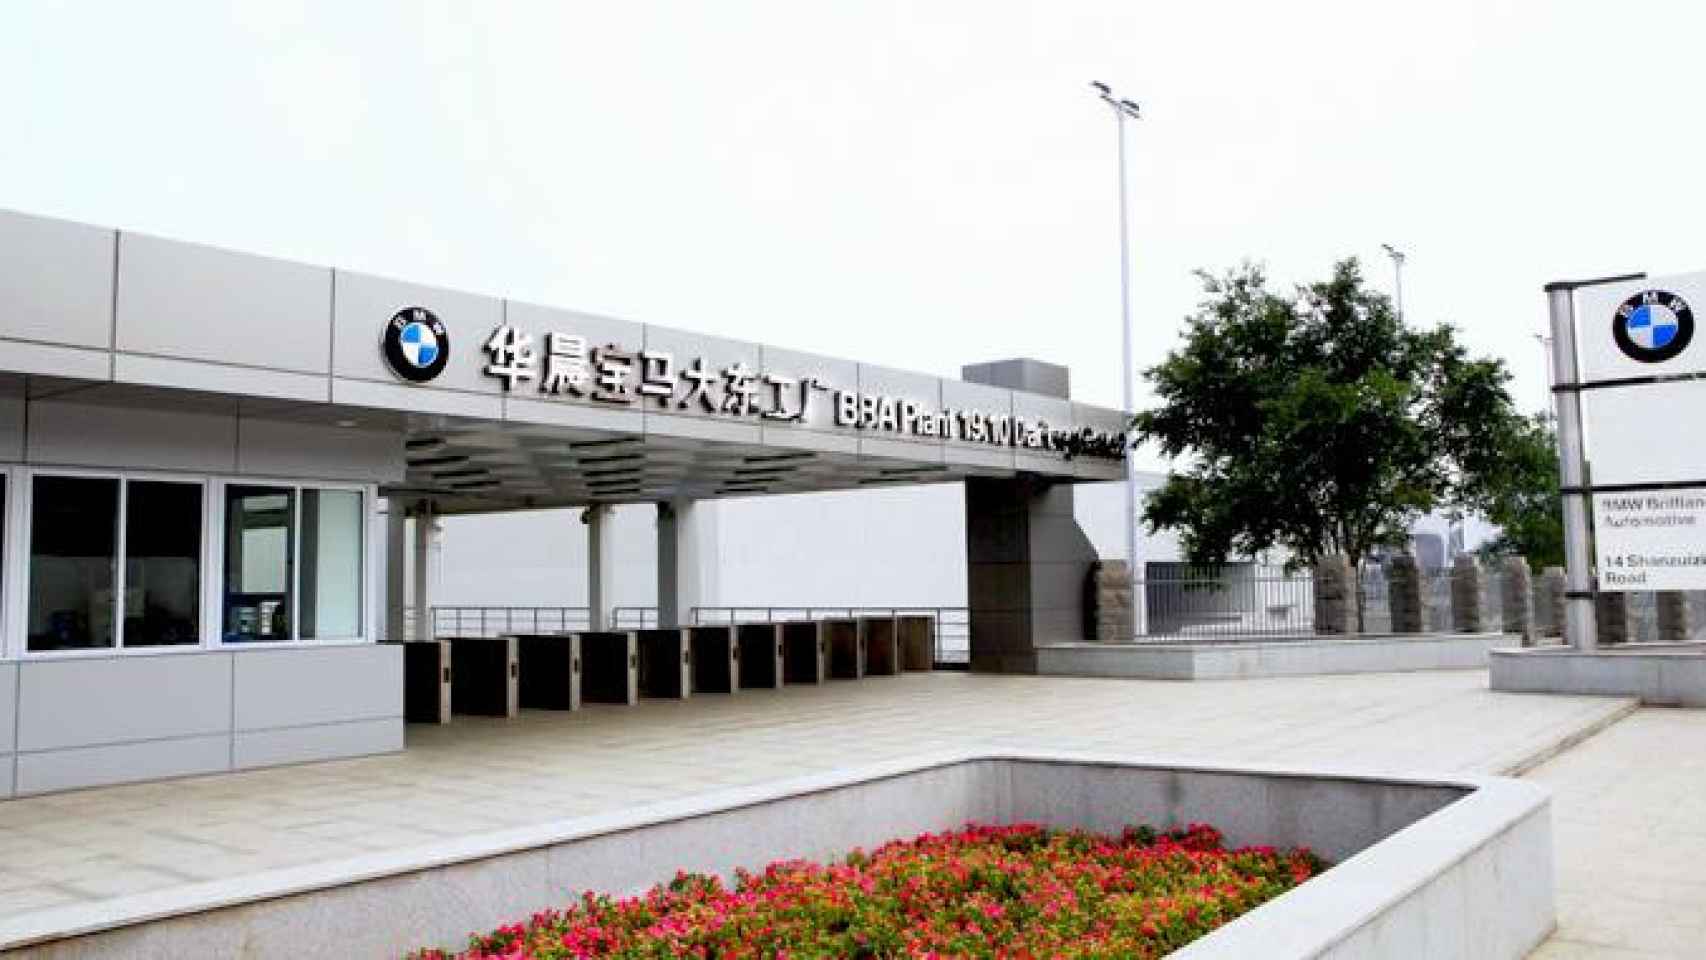 La planta de BMW de Dadong, el centro de producción de baterías eléctricas de China / BMW